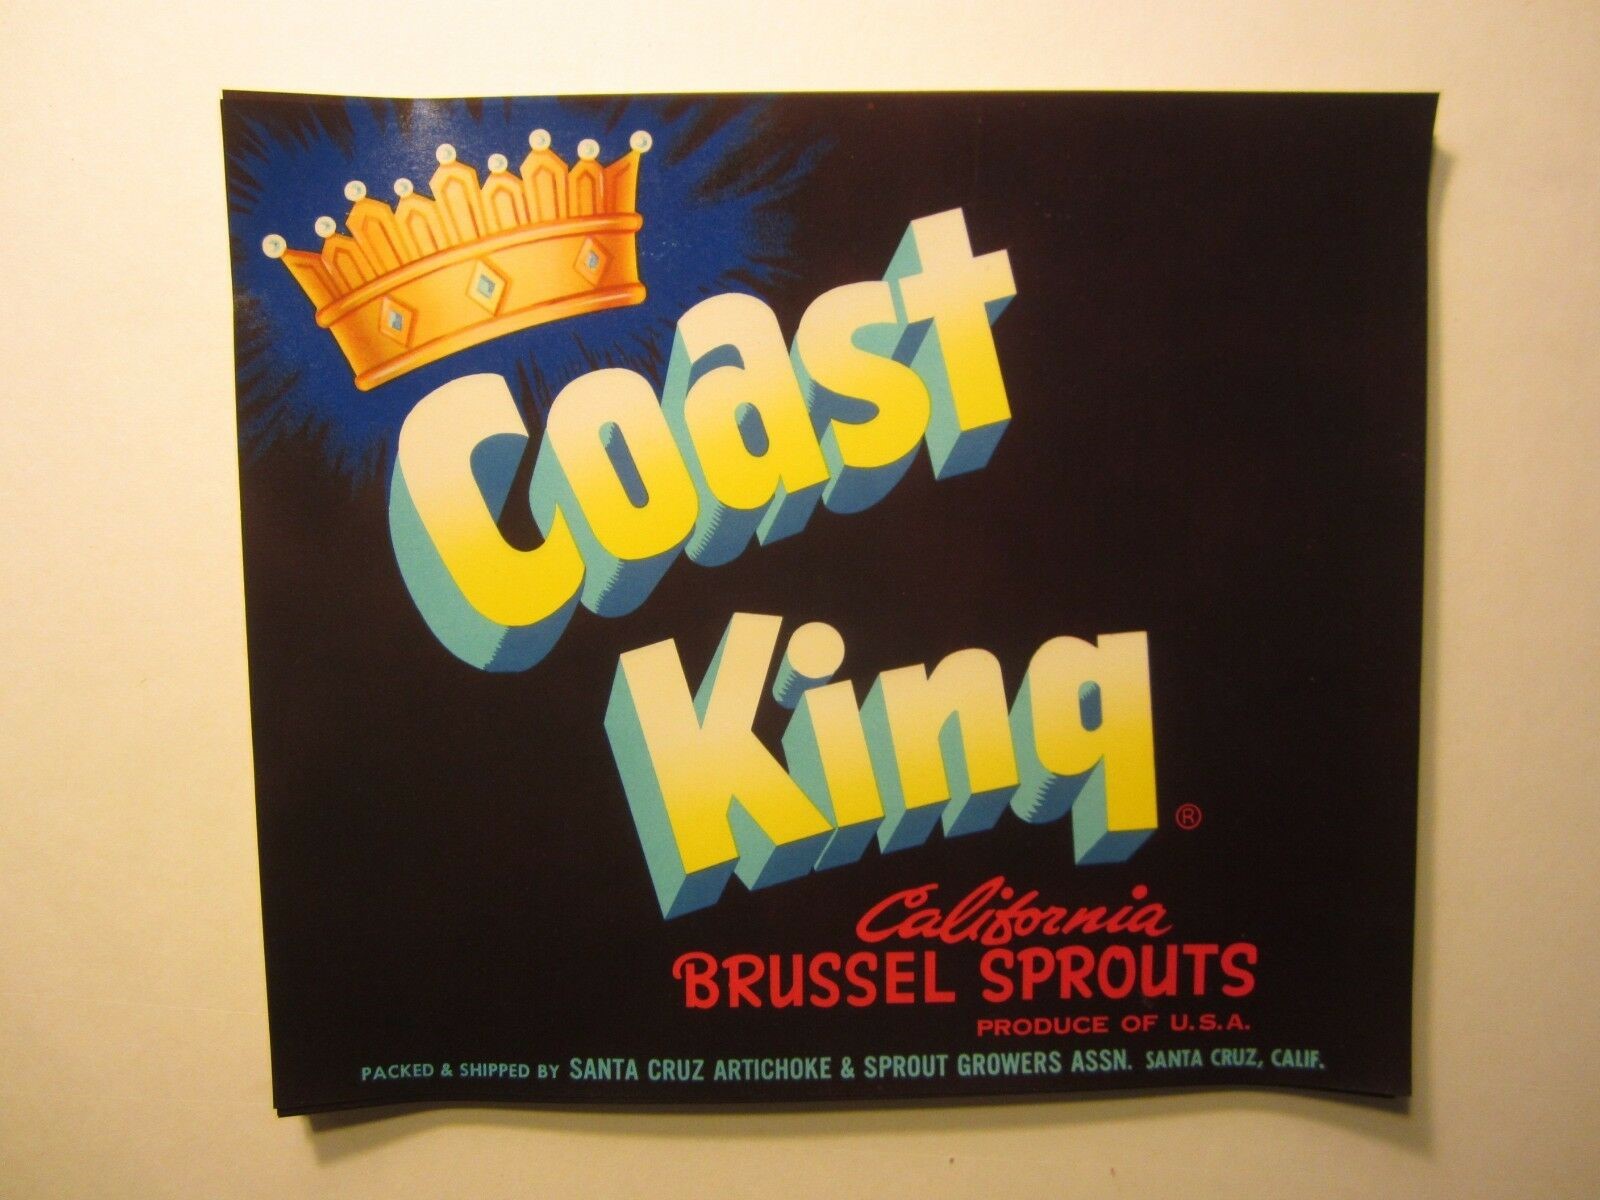  Lot of 100 Old Vintage COAST KING Brussel Spro...